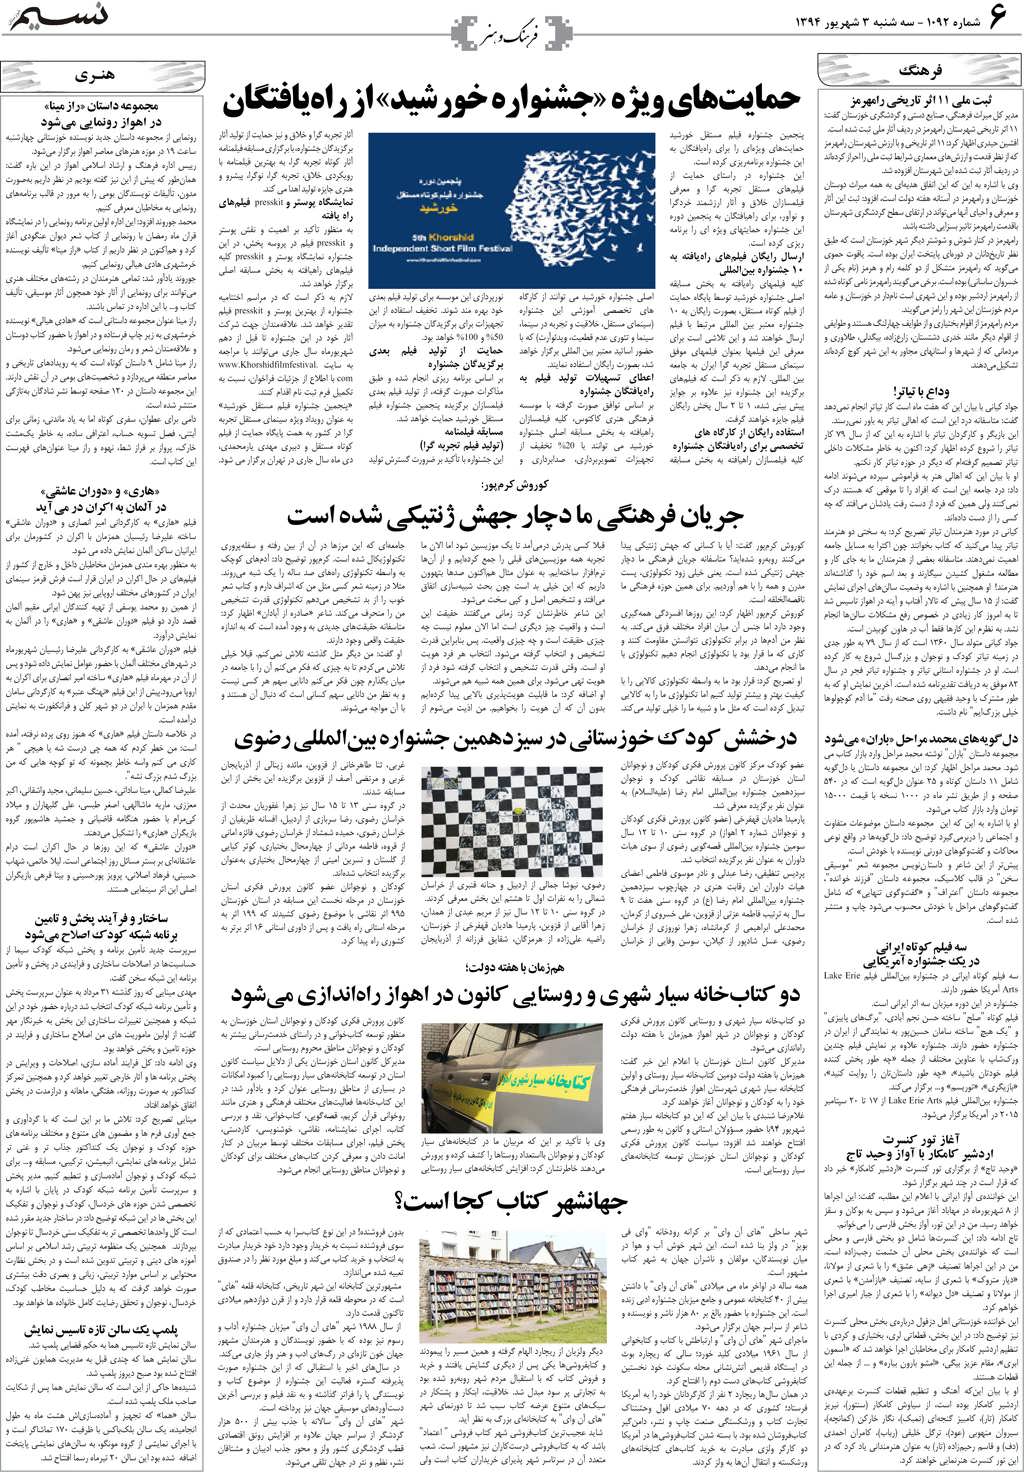 صفحه فرهنگ و هنر روزنامه نسیم شماره 1092